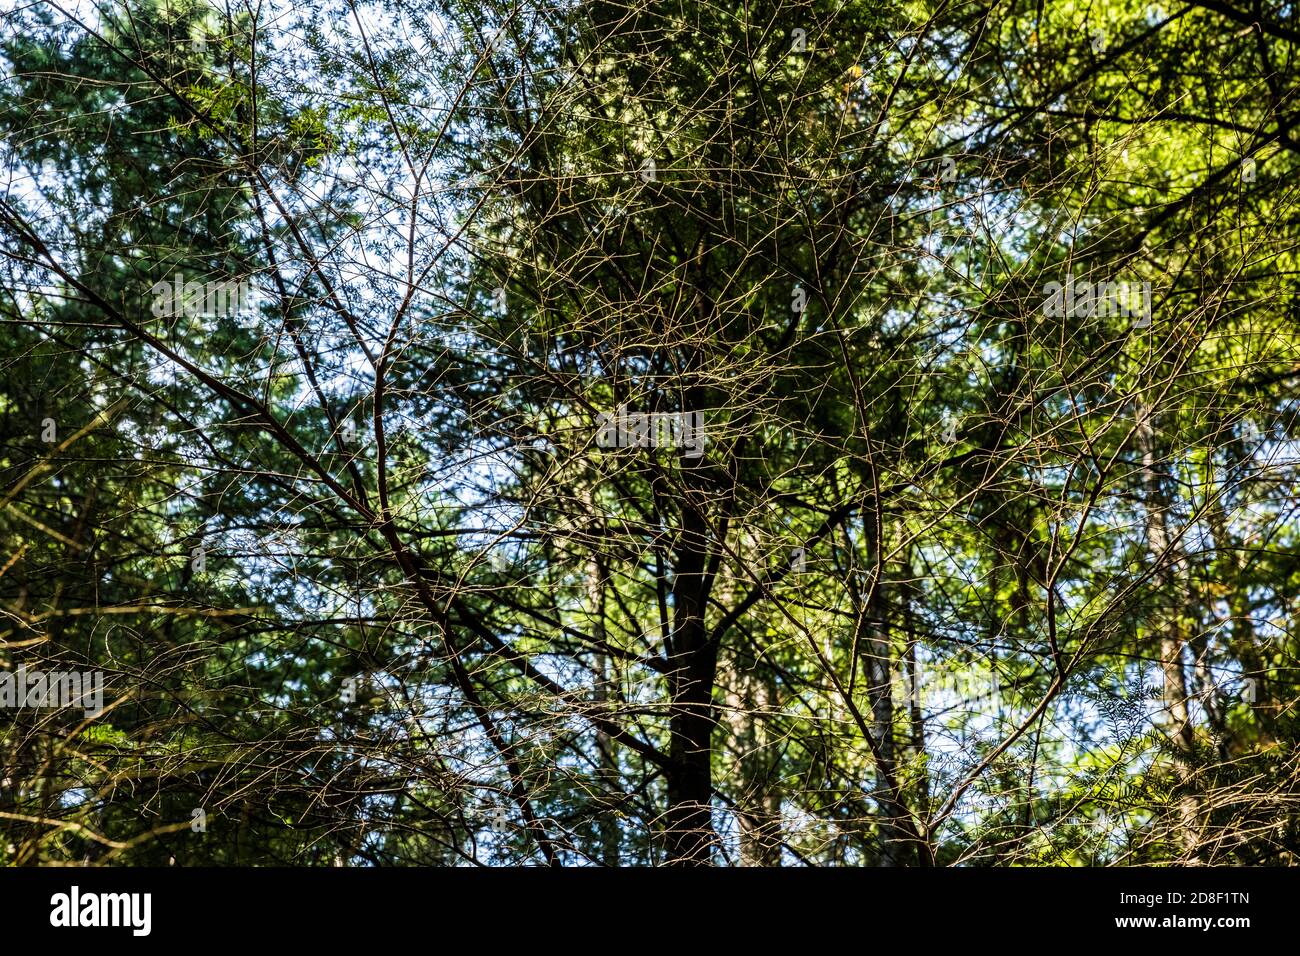 Detalles de las ramas de los árboles finos en el bosque a lo largo del camino de los Lagos Gemelos en el Parque Estatal Moran, Isla Orcas, Washington, EE.UU. Foto de stock